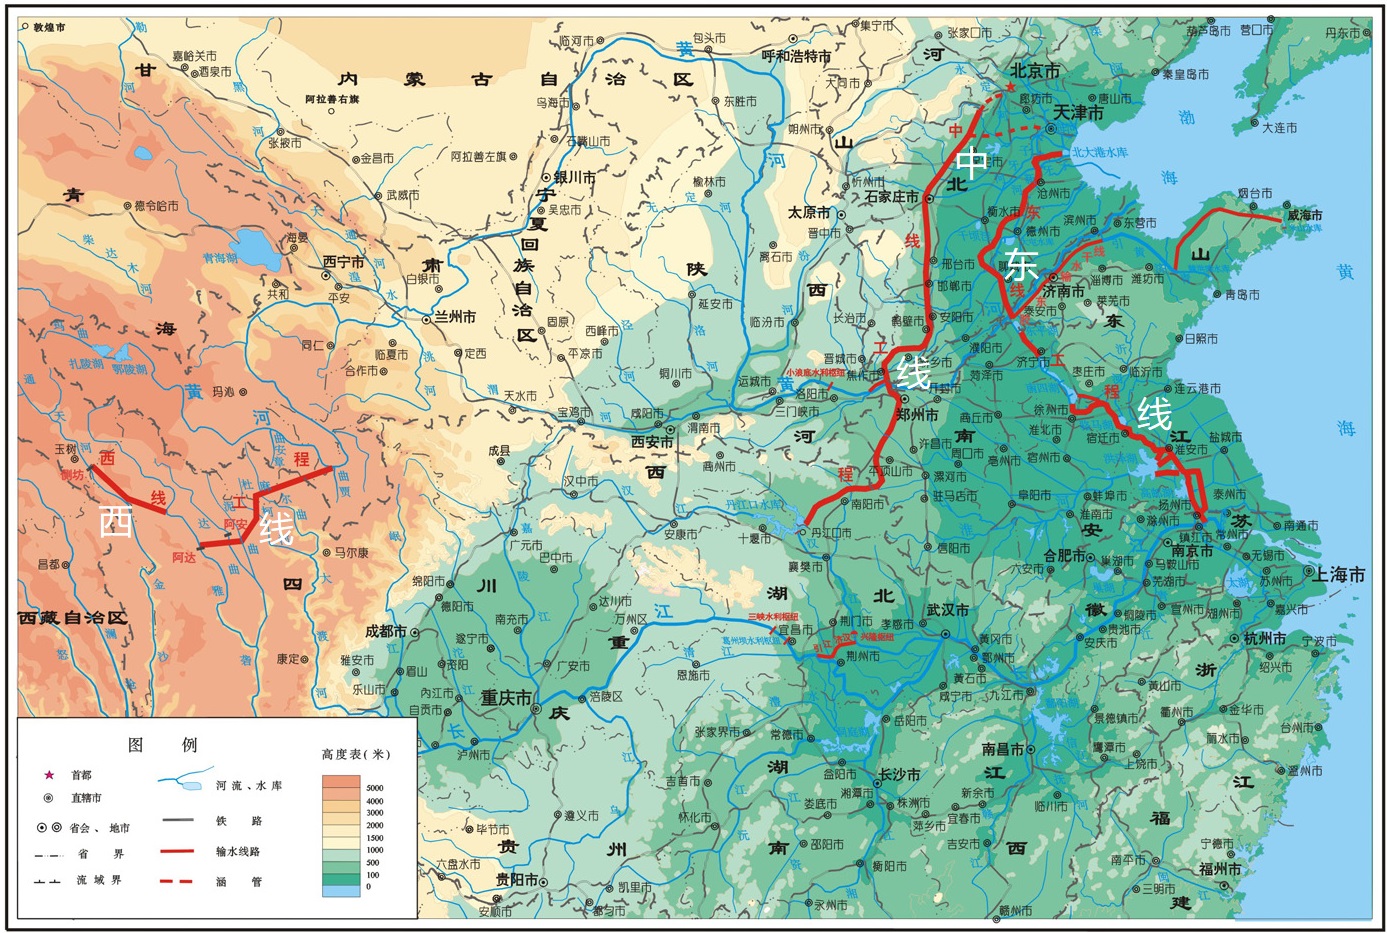 南水北调工程缓解了华北水资源紧张,其中京津冀豫四省市得益最大